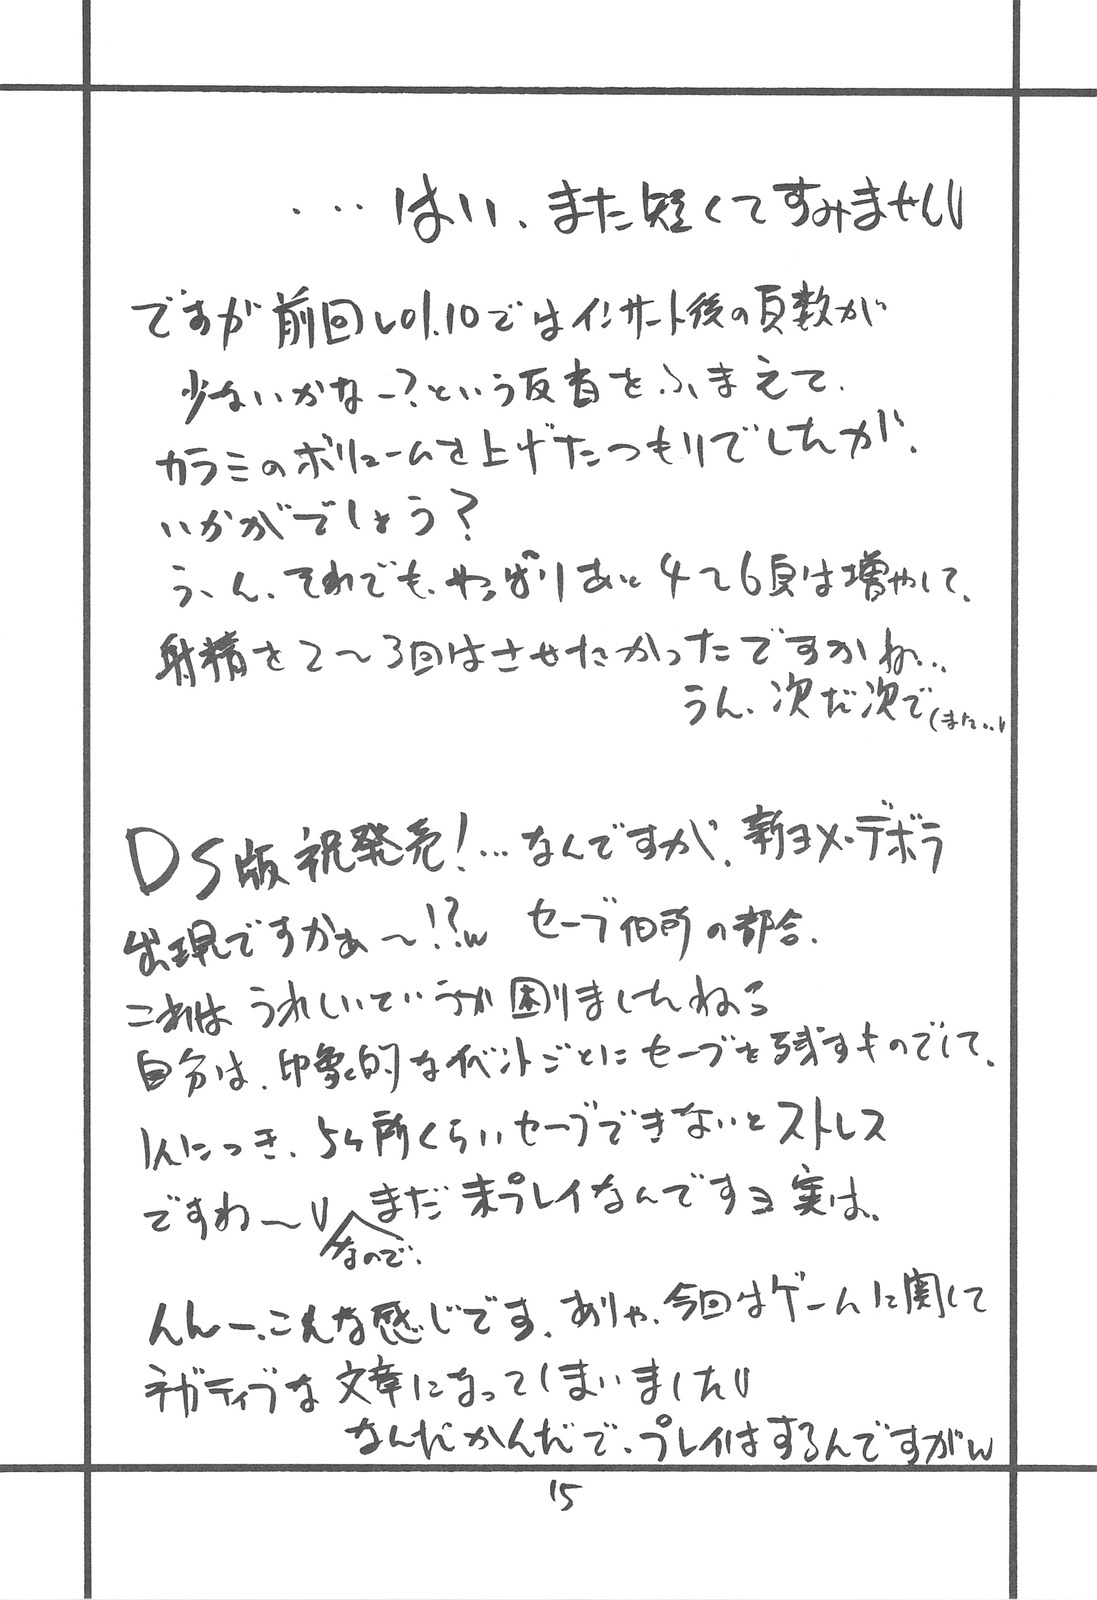 (SC41) [ZINZIN (Hagure Metal)] DRAGON REQUEST Vol. 11 (Dragon Quest V) page 14 full